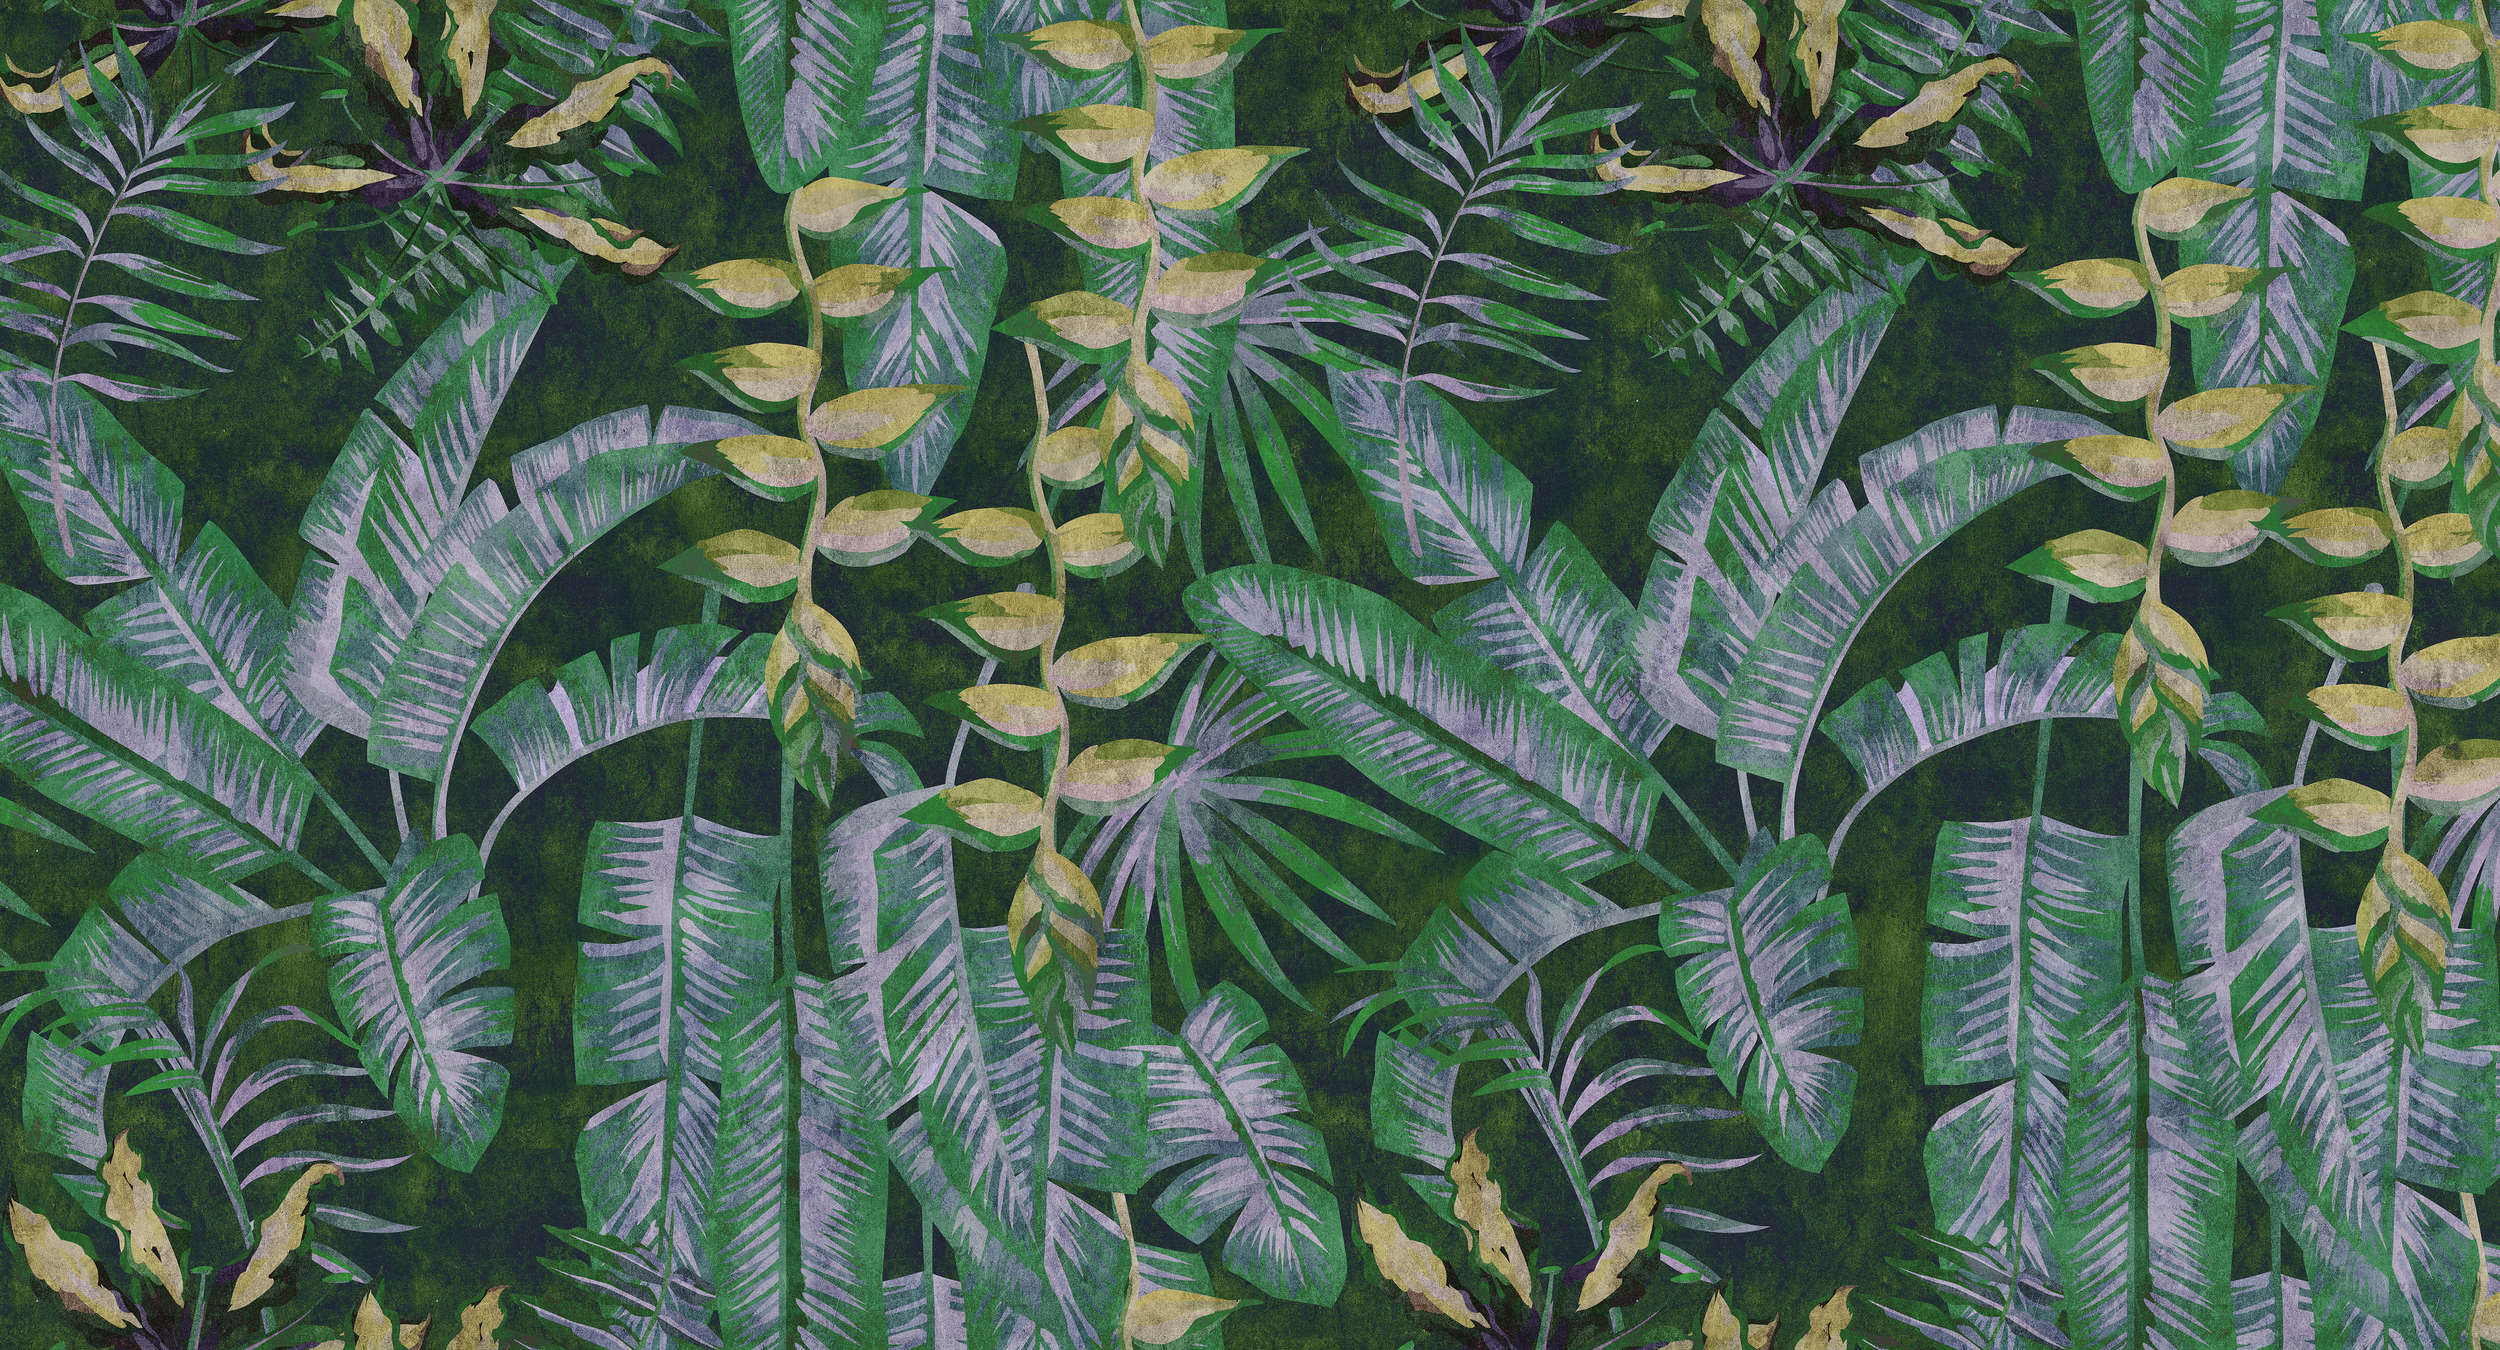             Tropicana 2 - digitaal printbehang met tropische planten in vloeipapierstructuur - geel, groen | mat glad vlies
        